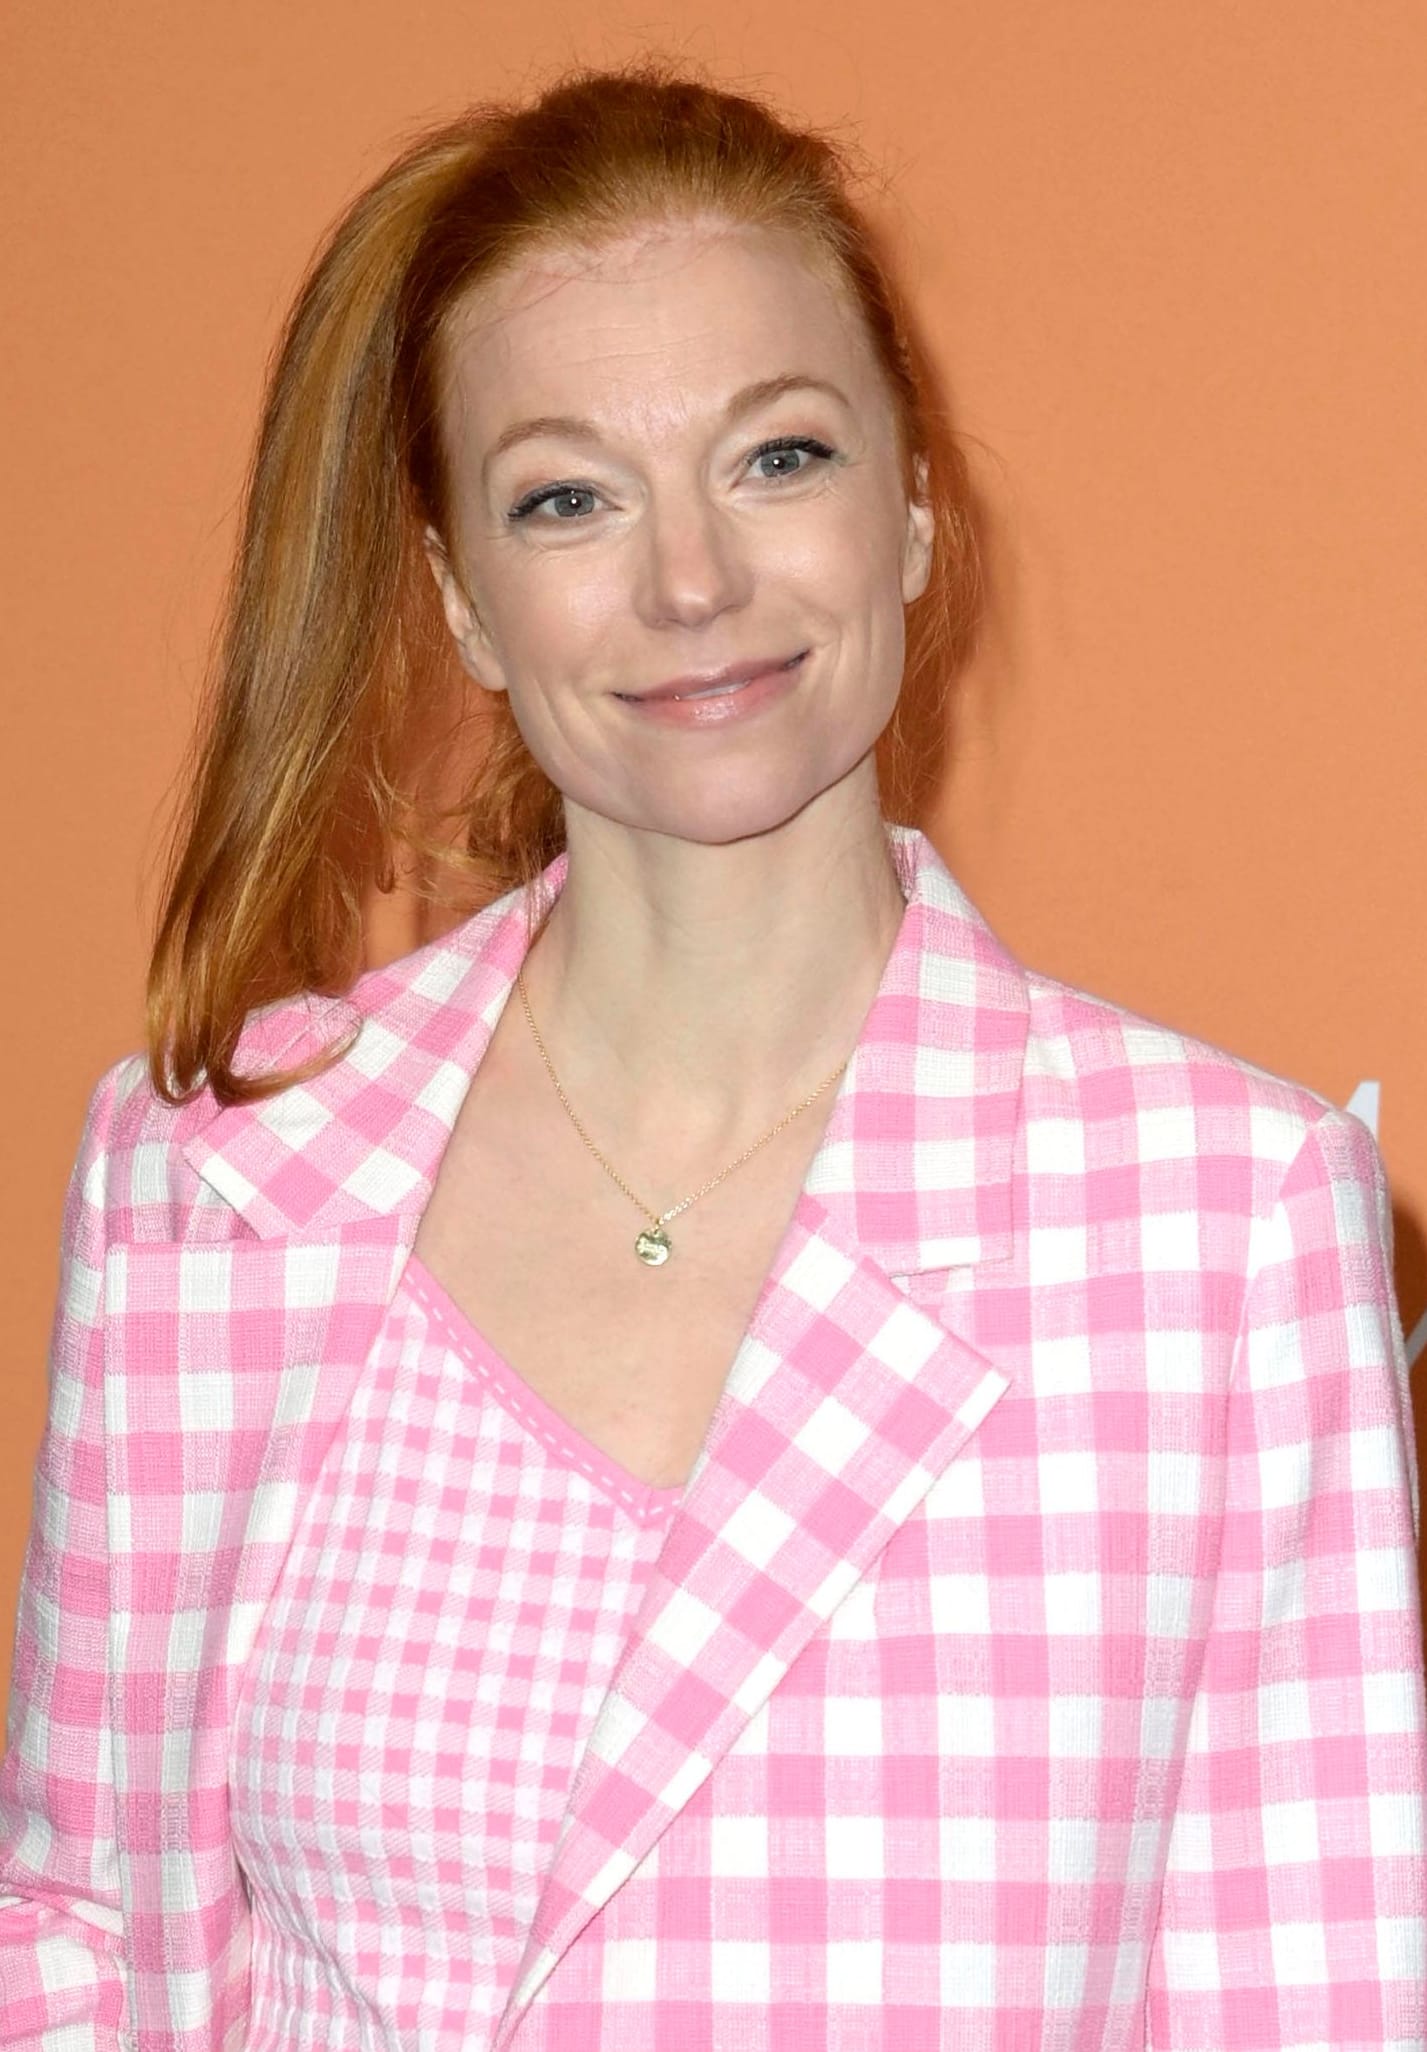 Marleen Lohse im Januar 2023 bei einer Veranstaltung während der Fashion Week in Berlin.